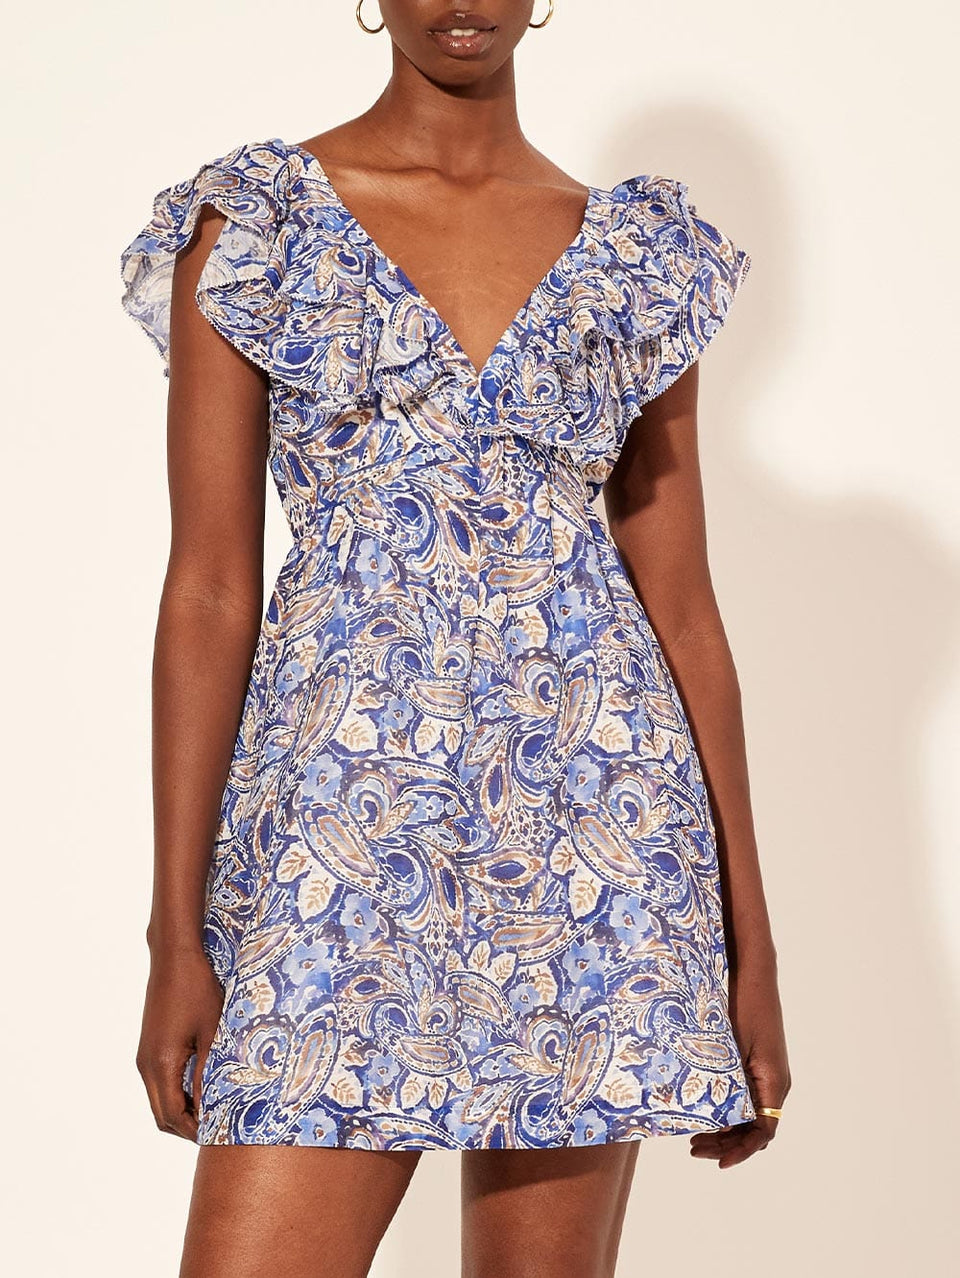 Dakota Ruffle Mini Dress KIVARI | Model wears blue paisley mini dress